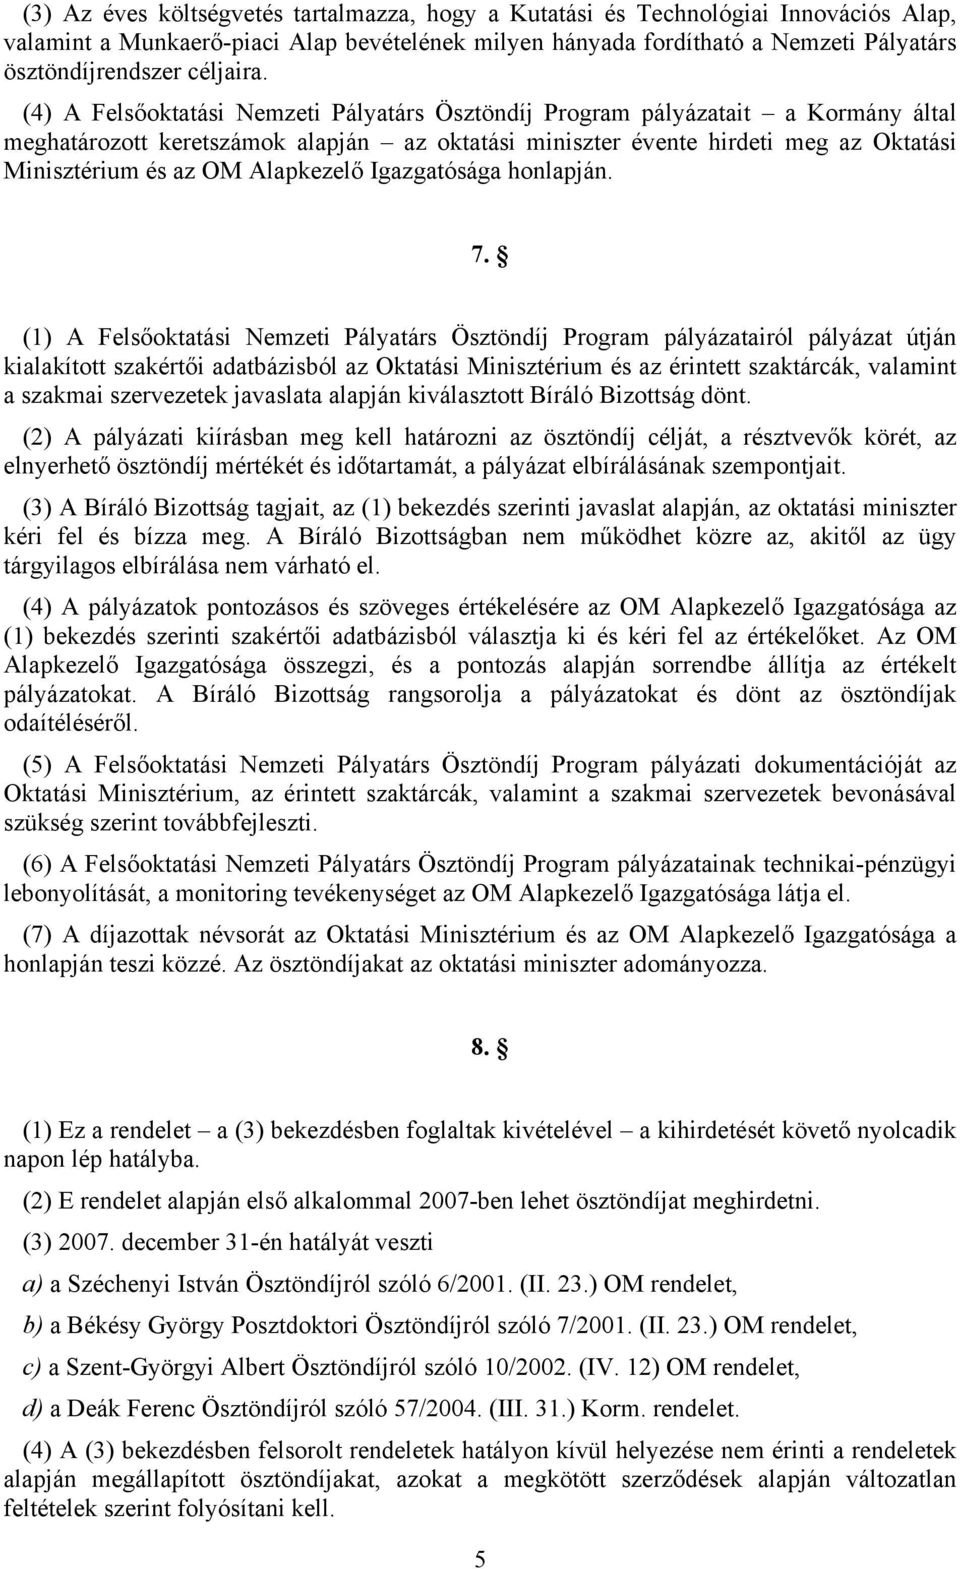 (4) A Felsőoktatási Nemzeti Pályatárs Ösztöndíj Program pályázatait a Kormány által meghatározott keretszámok alapján az oktatási miniszter évente hirdeti meg az Oktatási Minisztérium és az OM